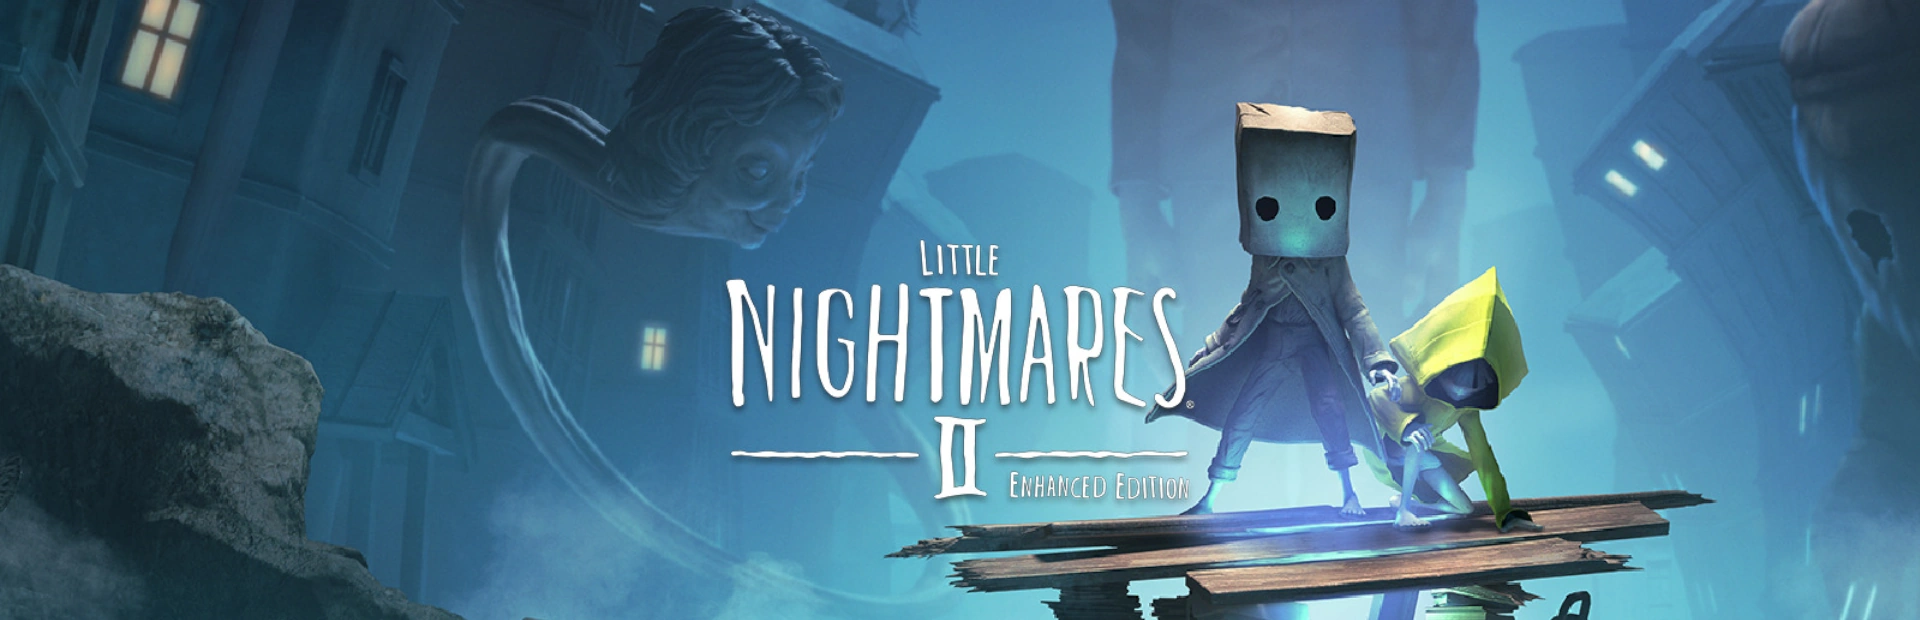 دانلود بازی Little Nightmares II برای کامپیوتر | گیمباتو